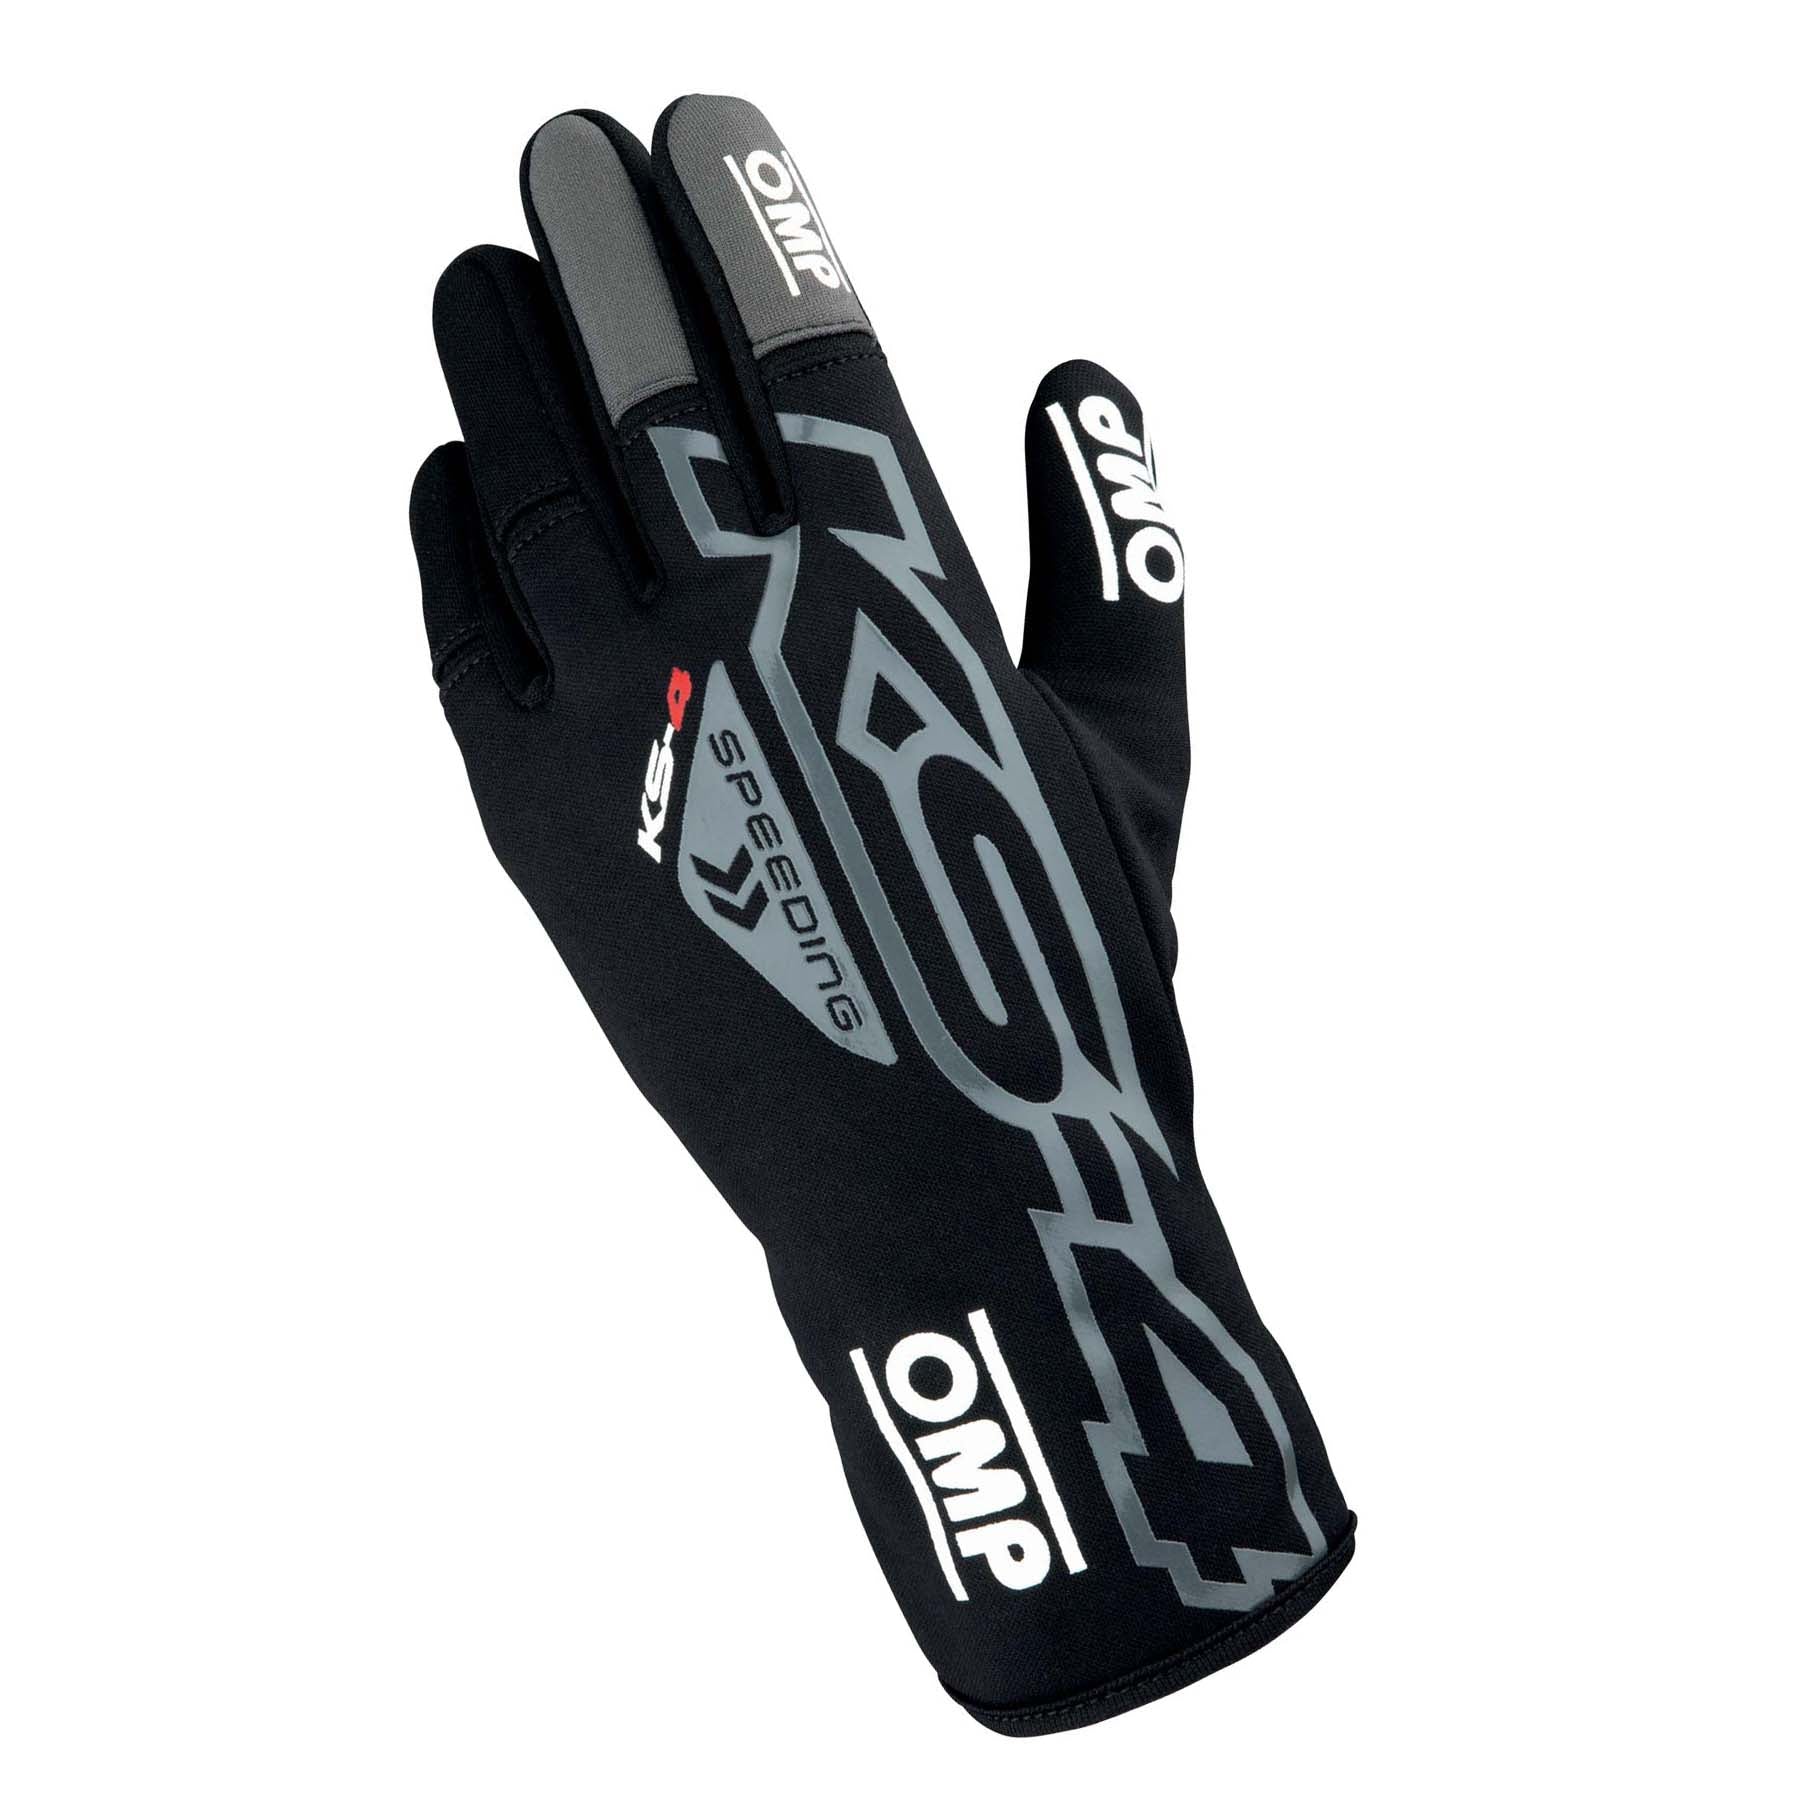 OMP KS-4 Karting Gloves